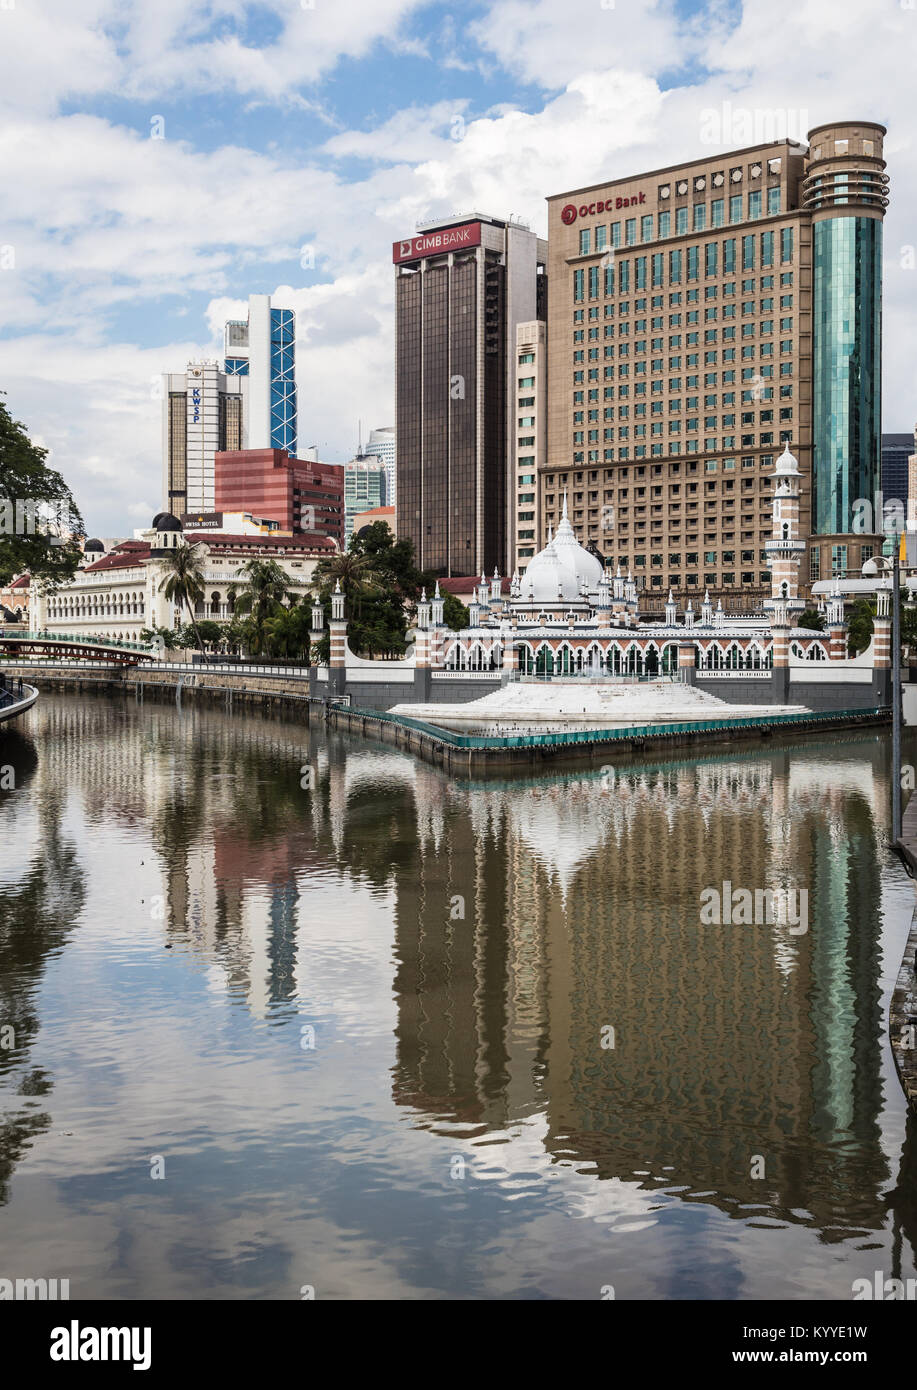 Kuala Lumpur, Malaisie - le 22 décembre 2017 : Le bureau bâtiments reflètent dans l'eau de la Chicago River en face de la mosquée Jamek, le vendredi mosq Banque D'Images